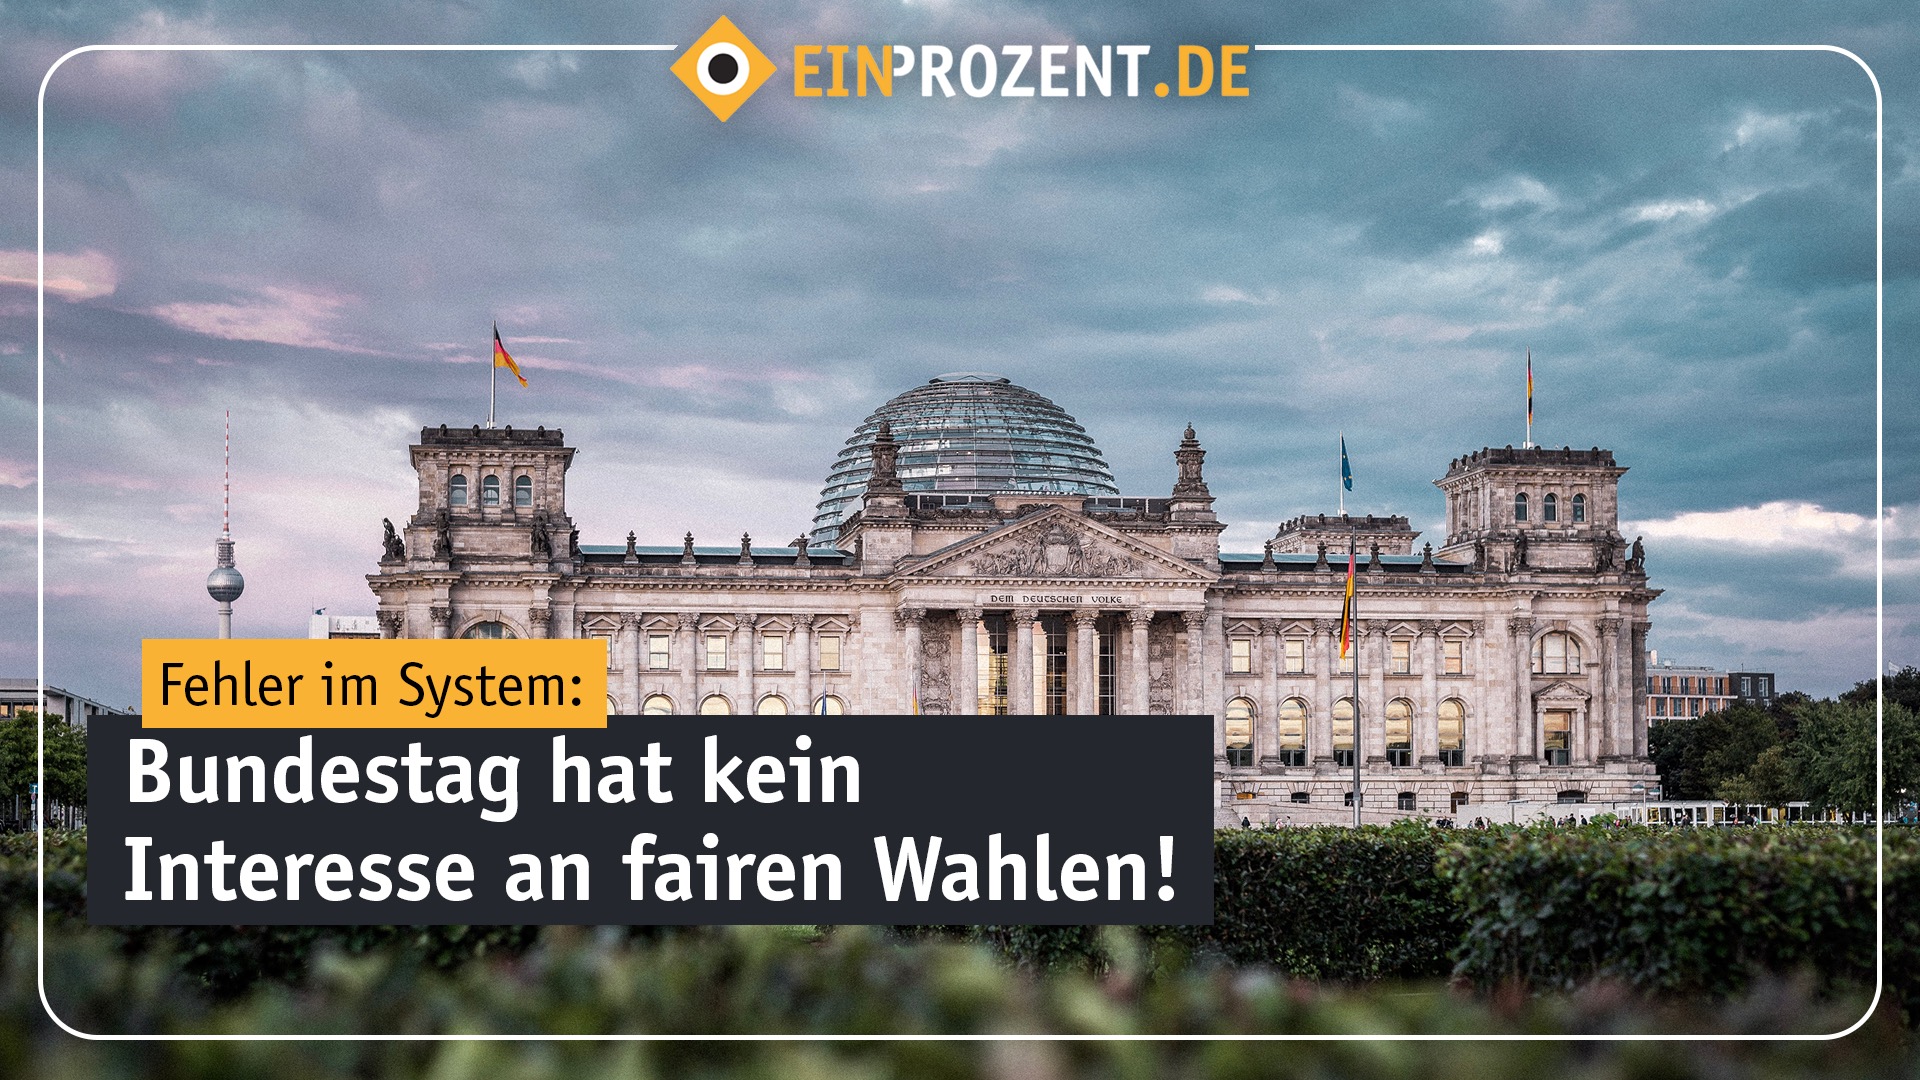 Kaputtes System: Der Bundestag und die Berlin-Wahl